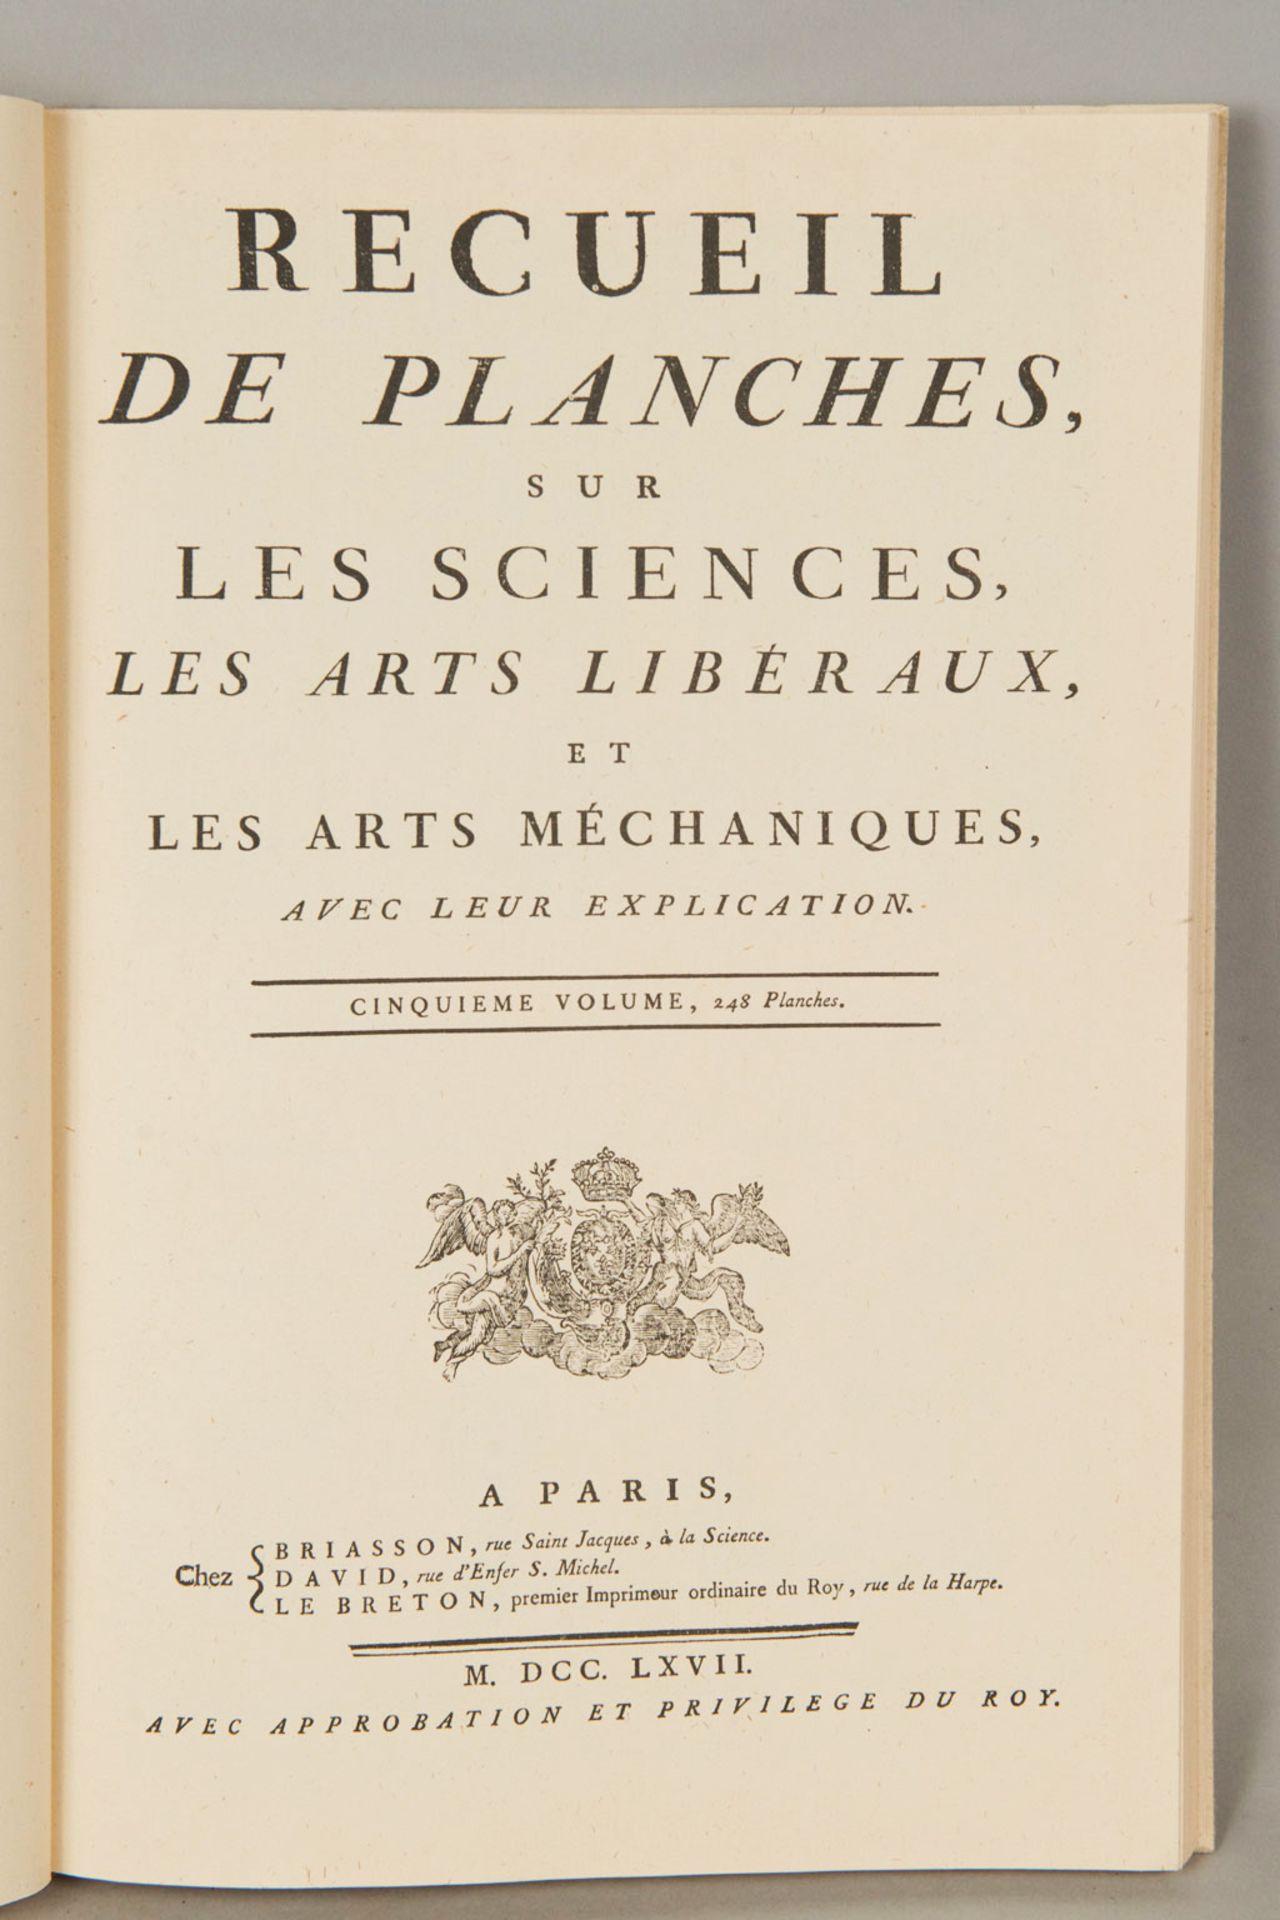 Recueil des planches, Les sciences les Arts liberaux - Image 2 of 3